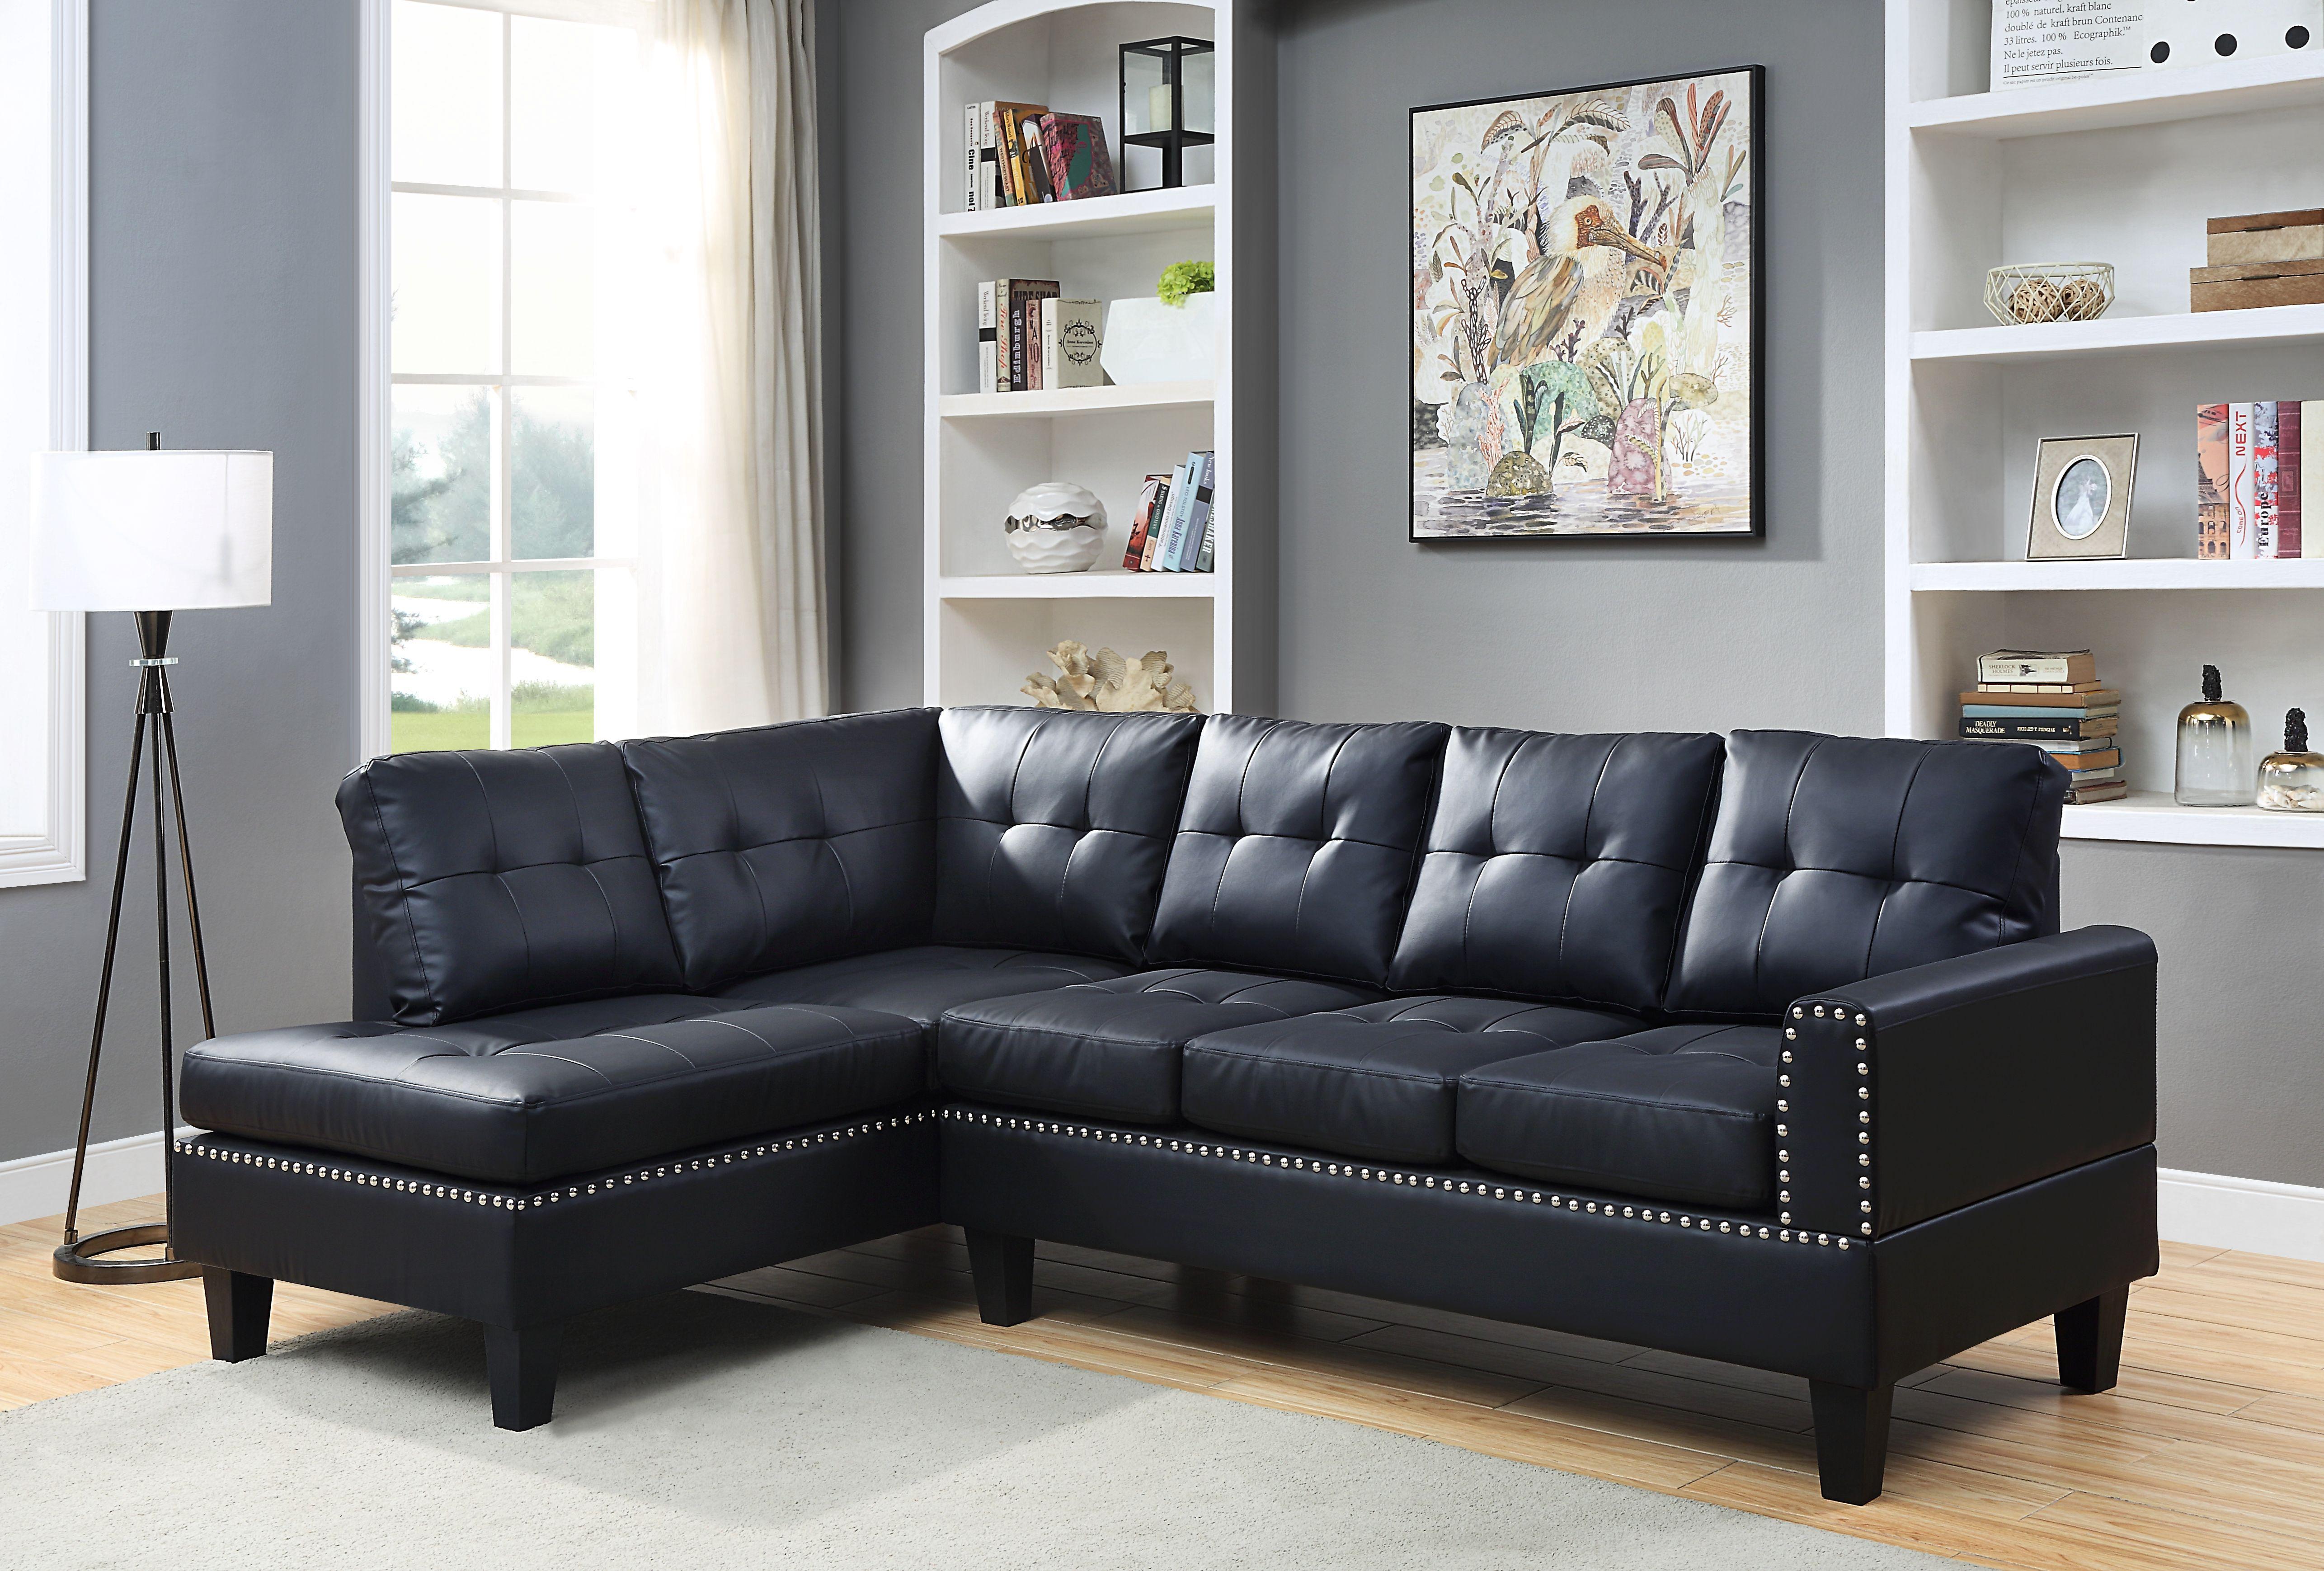 Modern, Classic Sectional Sofa Jeimmur 56465-3pcs in Black PU